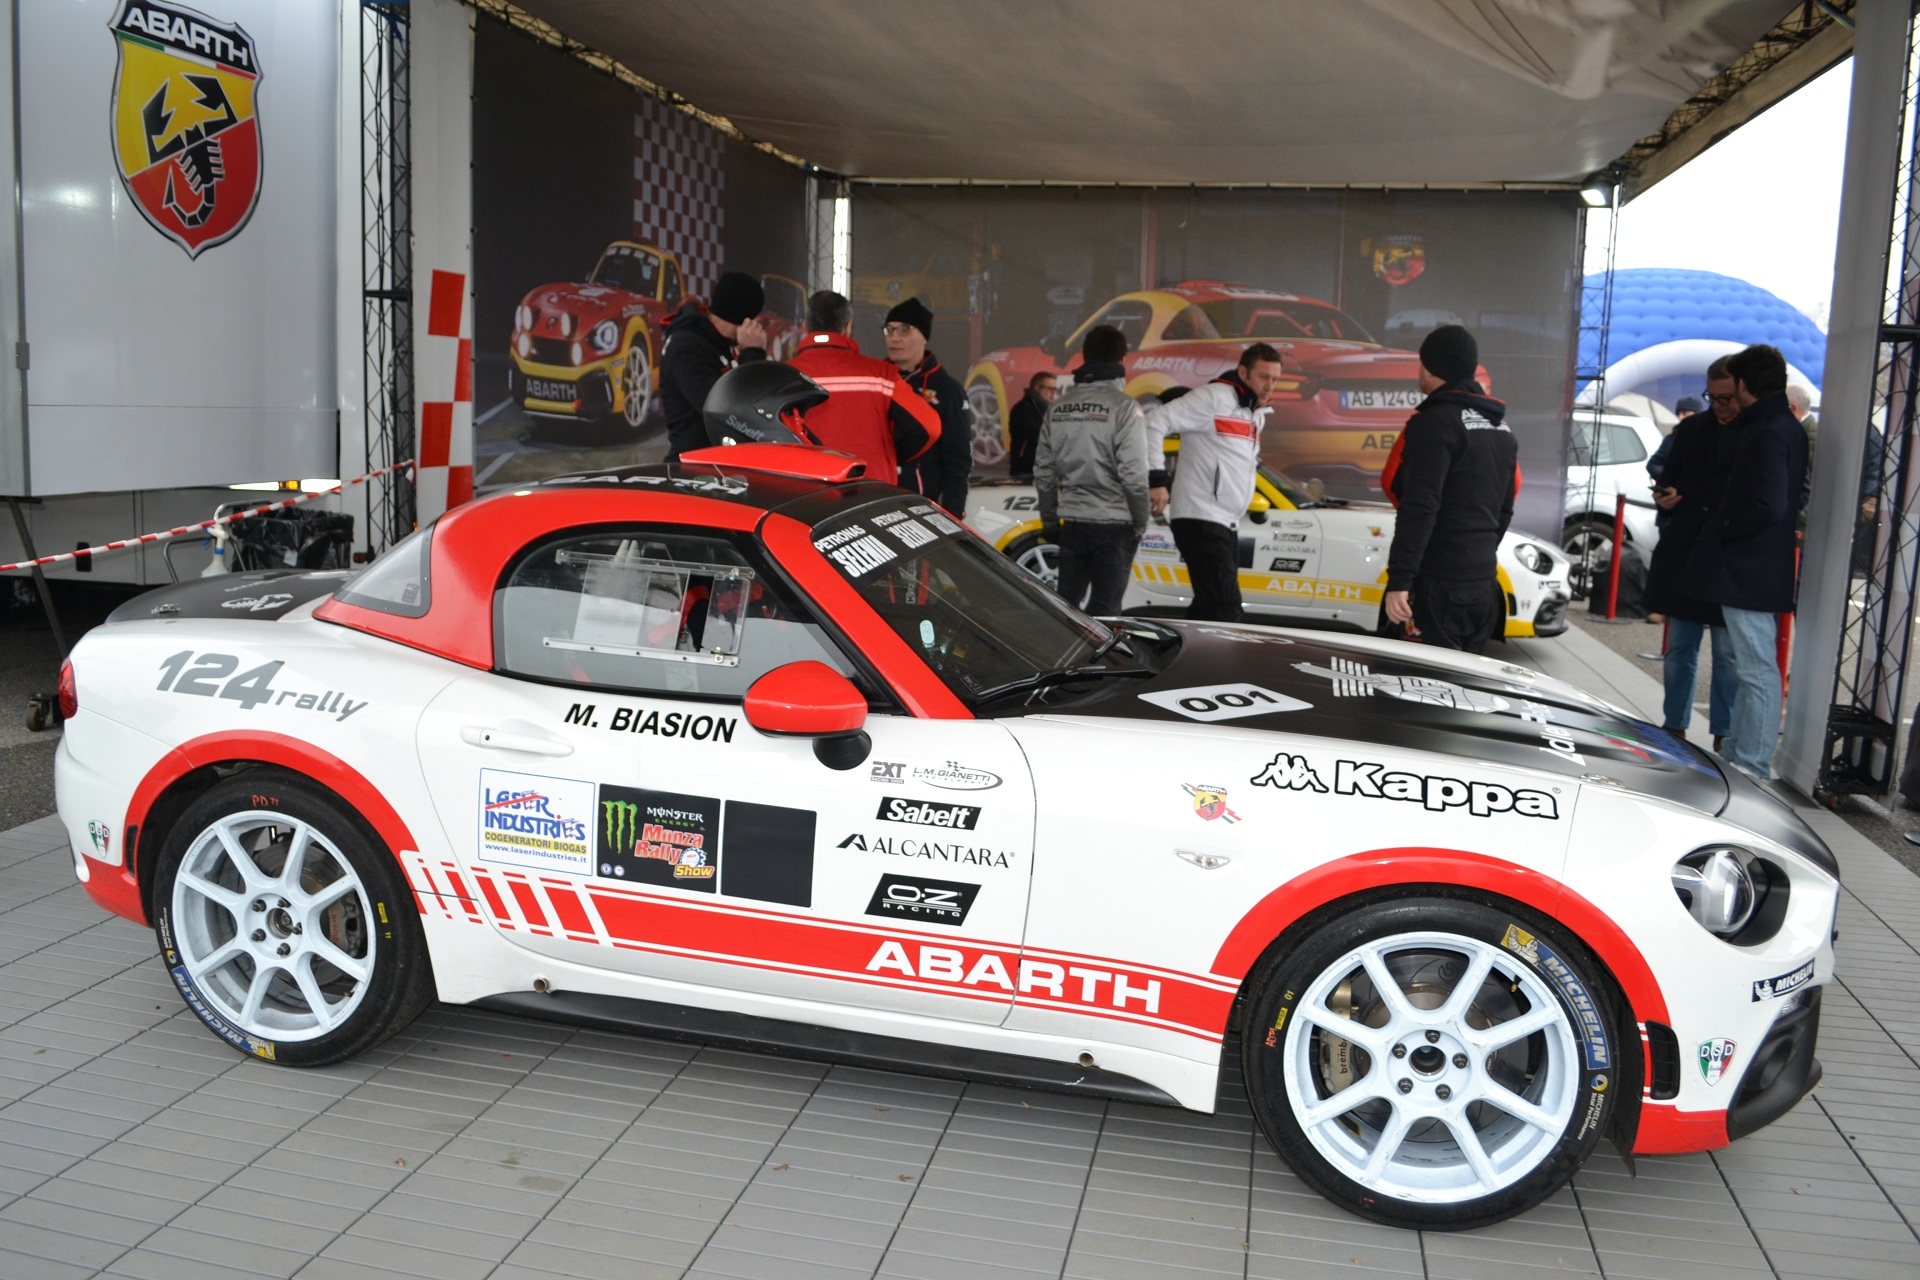 Le principali novità del Trofeo Abarth 124 rally